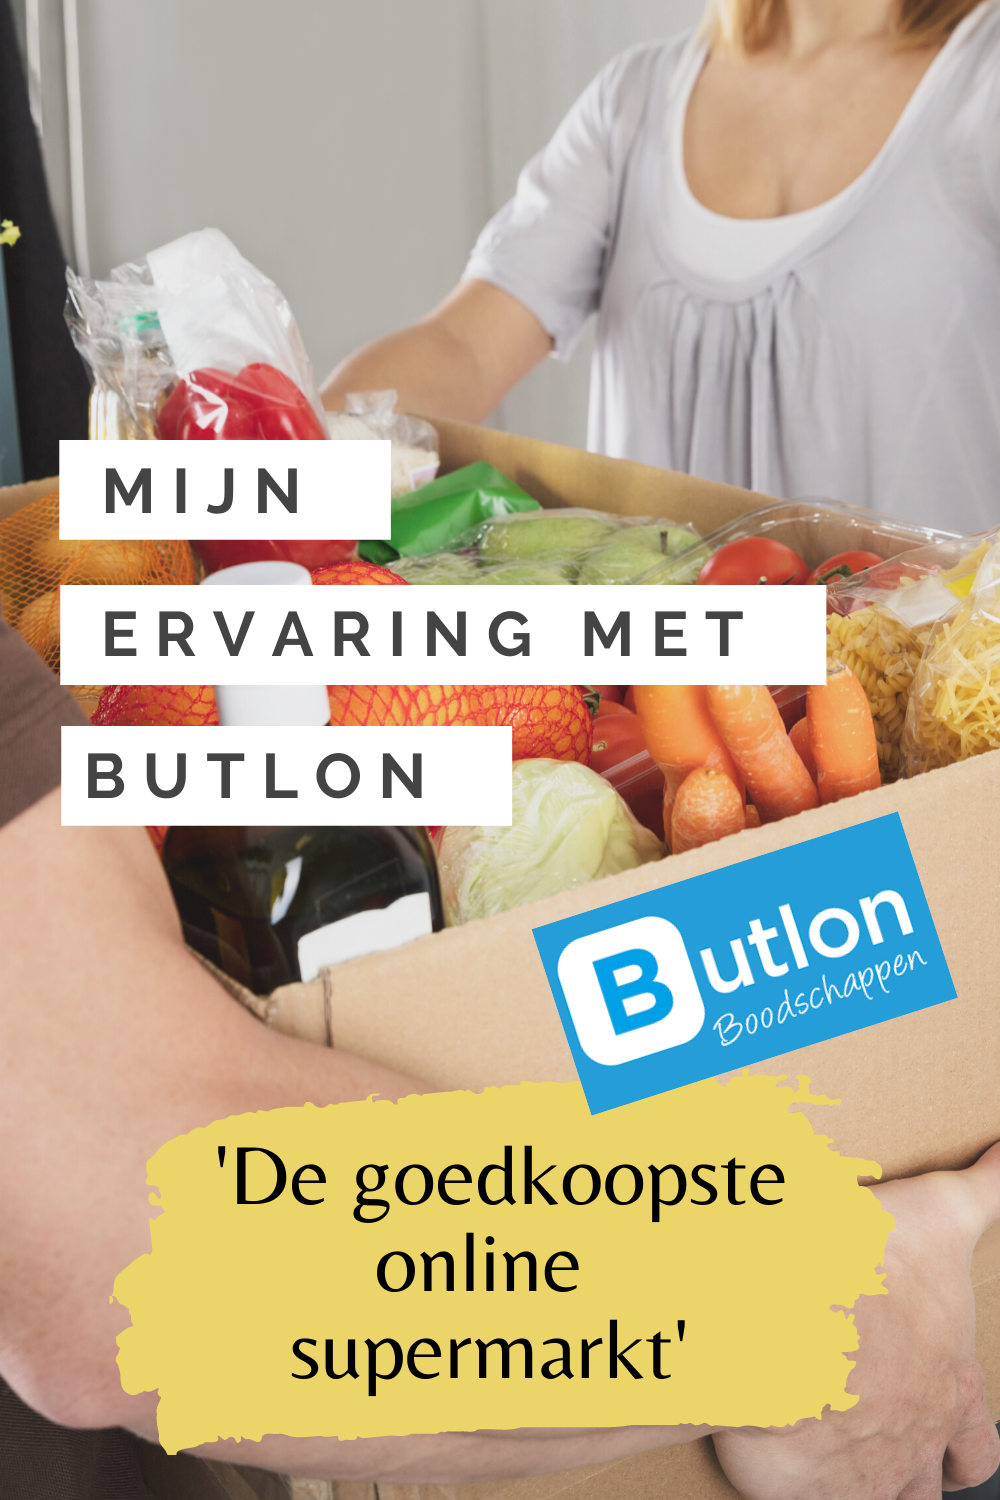 Mijn ervaring met butlon, de goedkoopste online supermarkt